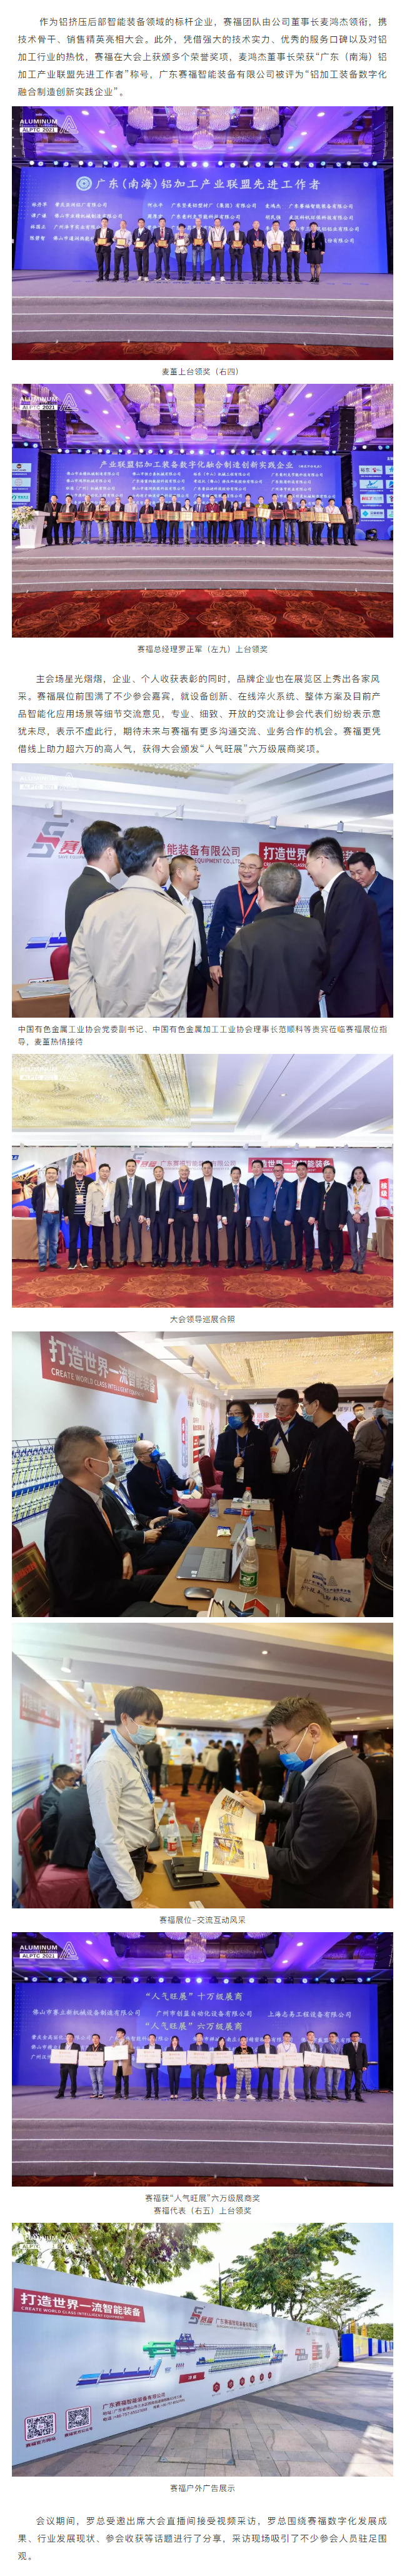 赛福智能装备亮相2021广东(南海)铝加工产业技术大会并获多项表彰(1).png